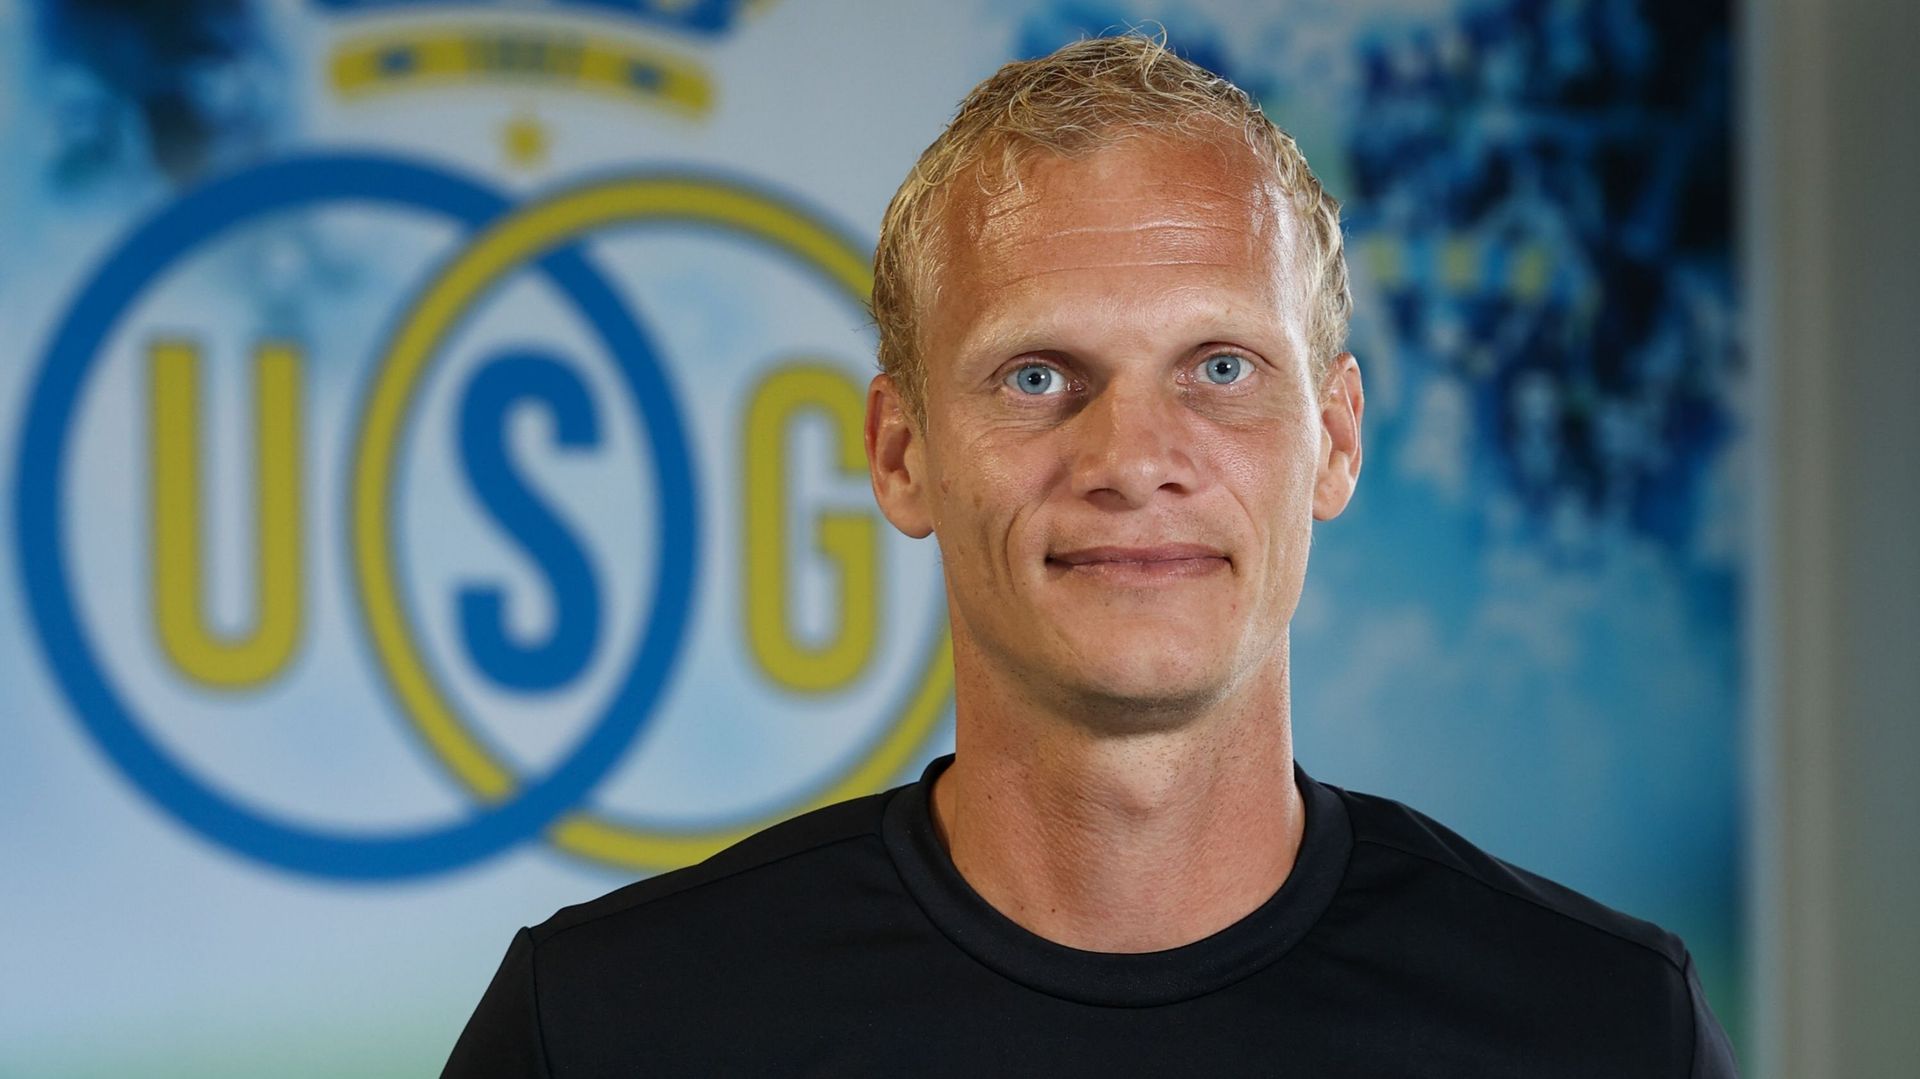 Karel Geraerts est le nouvel entraîneur de l’Union Saint-Gilloise. Il remplace Felize Mazzu.